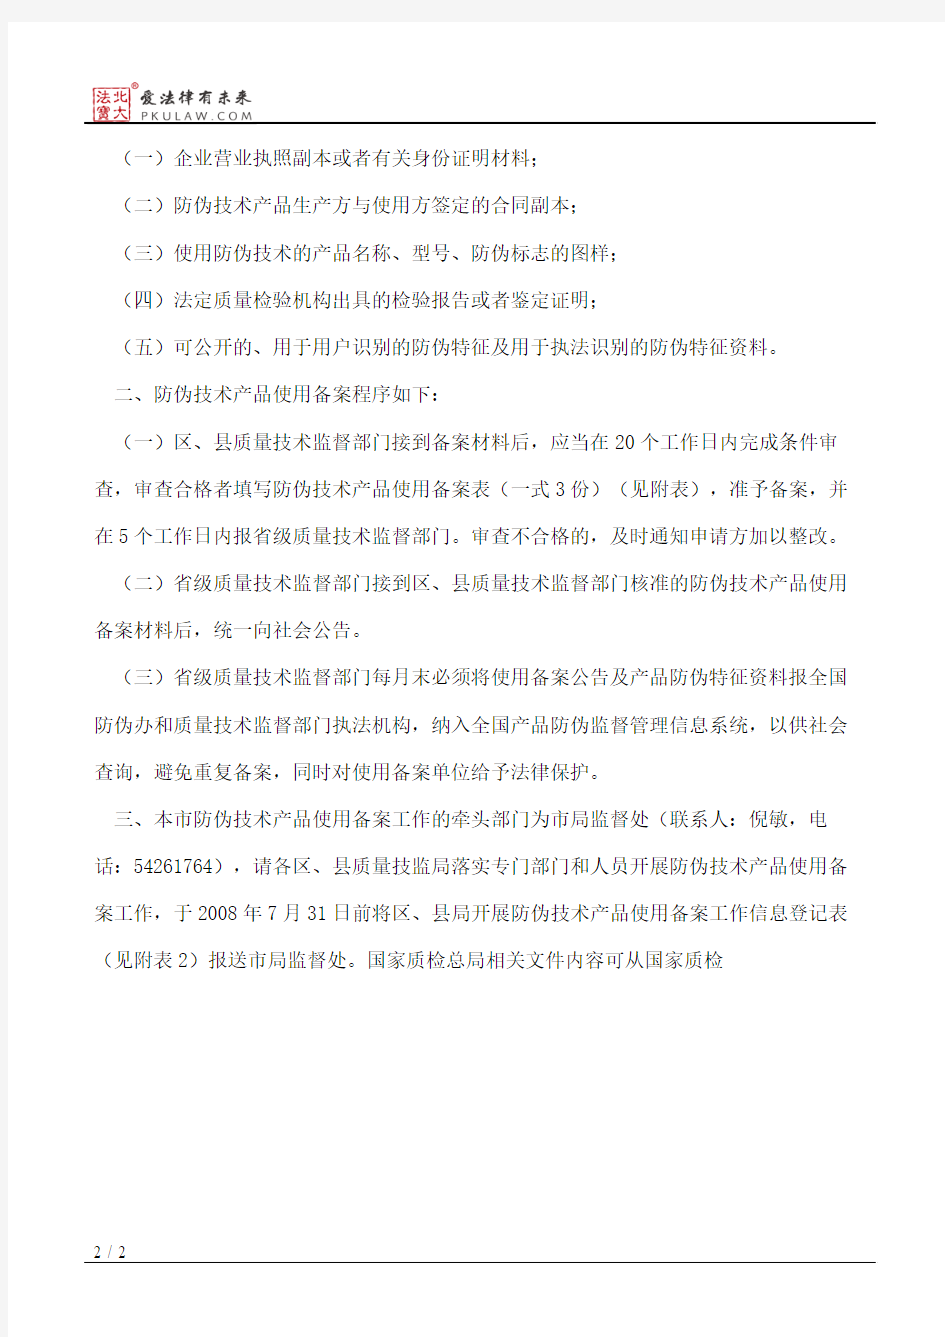 上海市质量技术监督局关于开展防伪技术产品使用备案工作的通知